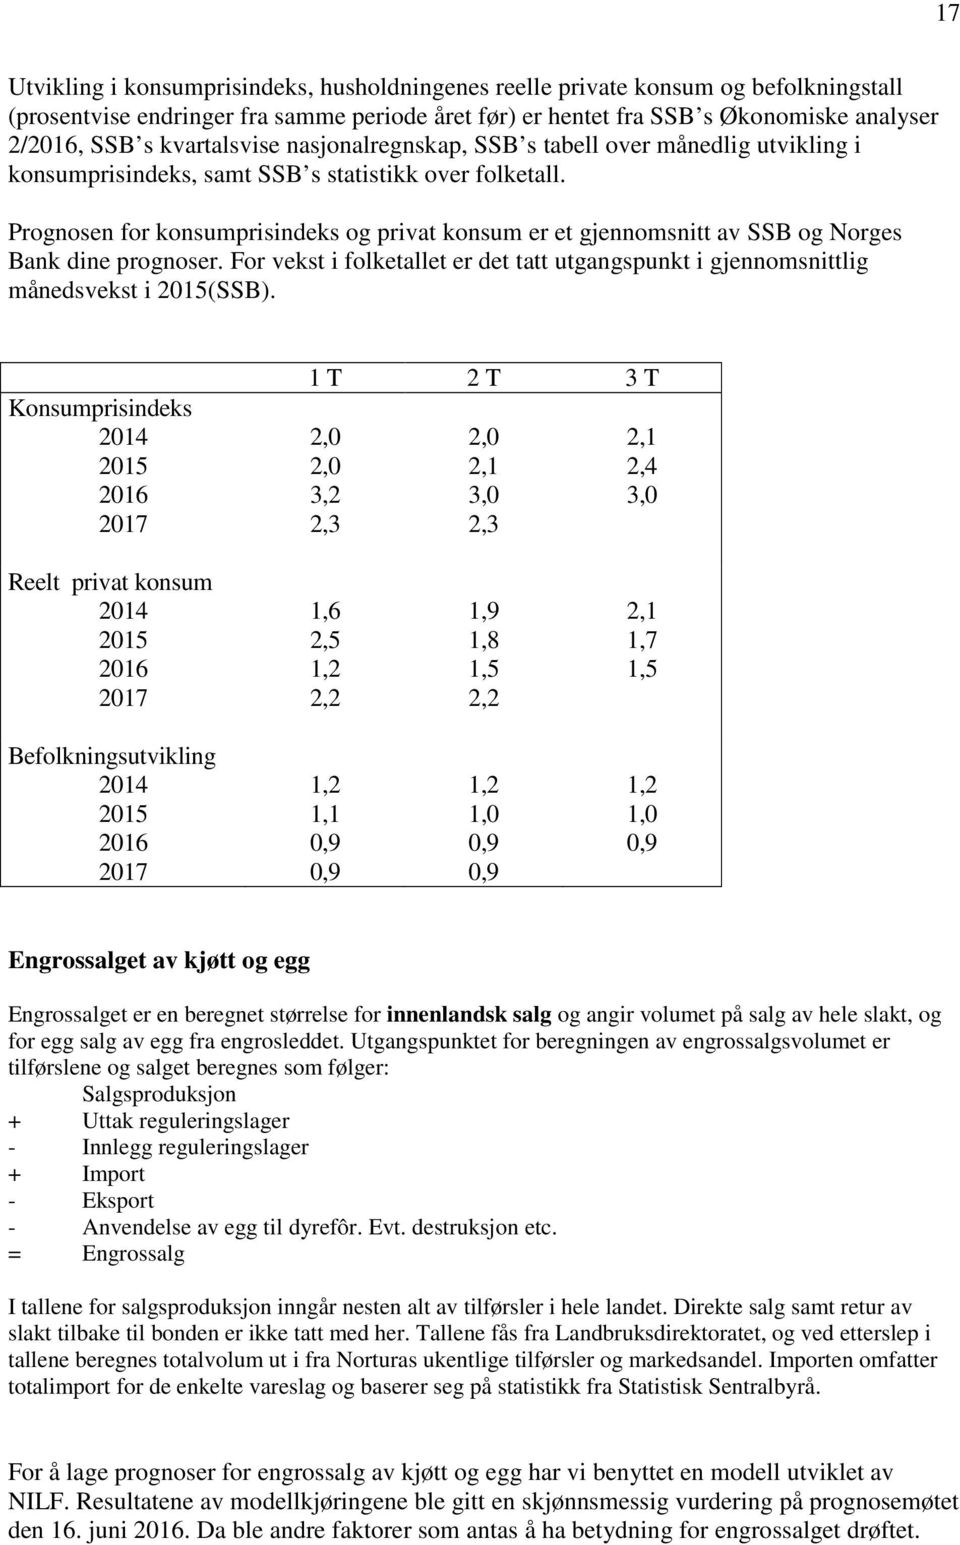 Prognosen for konsumprisindeks og privat konsum er et gjennomsnitt av SSB og Norges Bank dine prognoser. For vekst i folketallet er det tatt utgangspunkt i gjennomsnittlig månedsvekst i 2015(SSB).